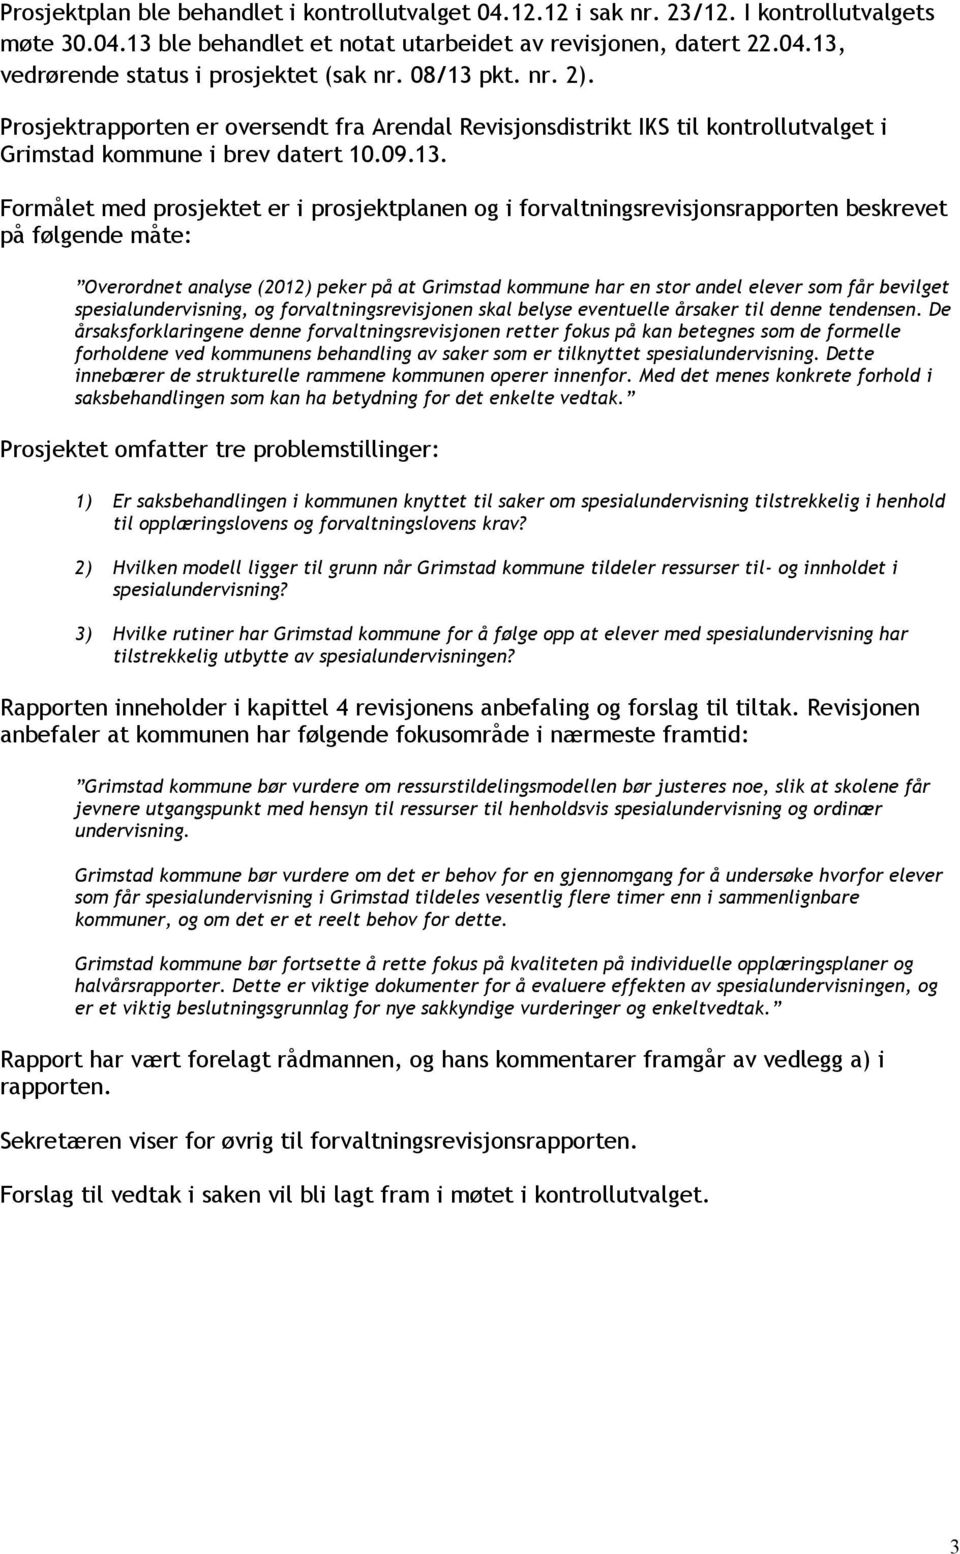 pkt. nr. 2). Prosjektrapporten er oversendt fra Arendal Revisjonsdistrikt IKS til kontrollutvalget i Grimstad kommune i brev datert 10.09.13.